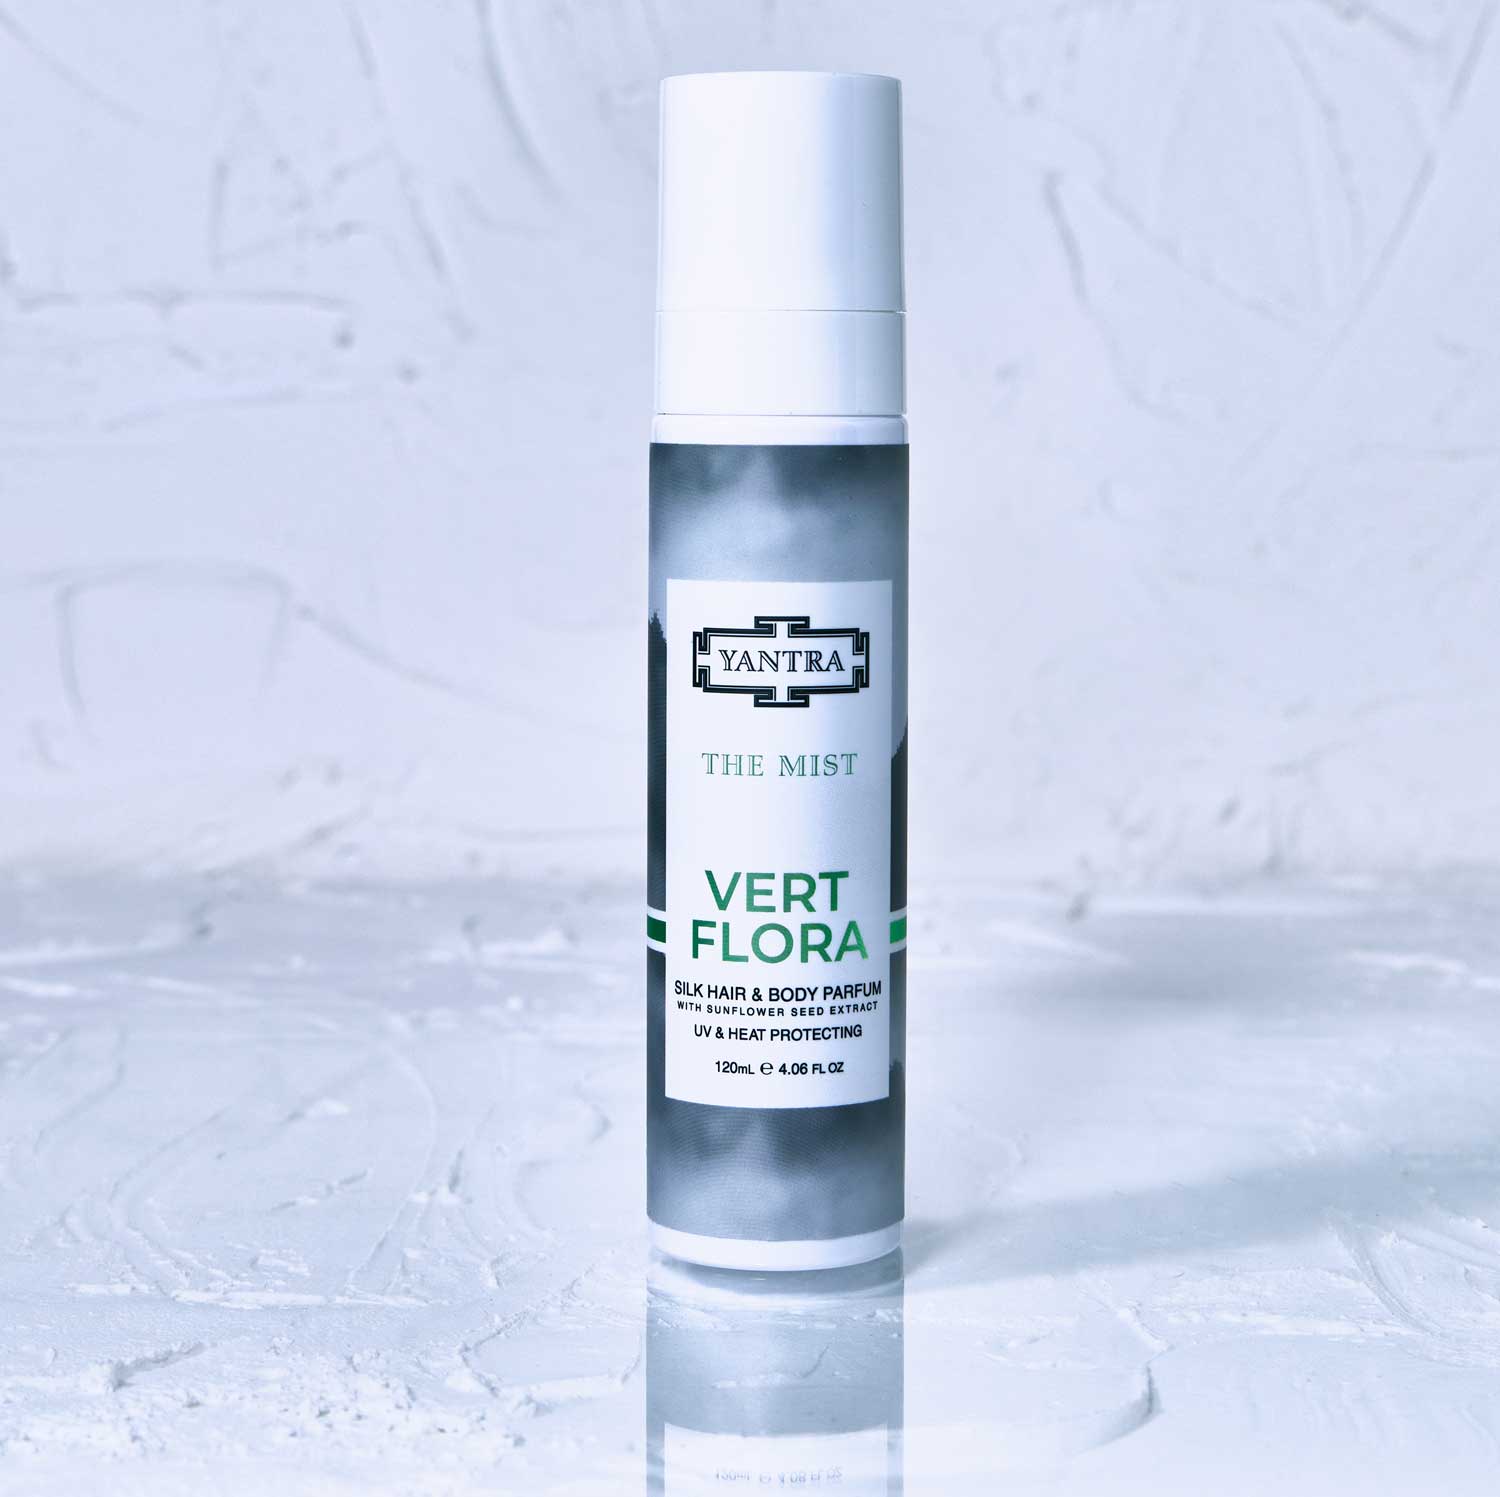 The Mist - UV + Heat Protect + Hair Perfume